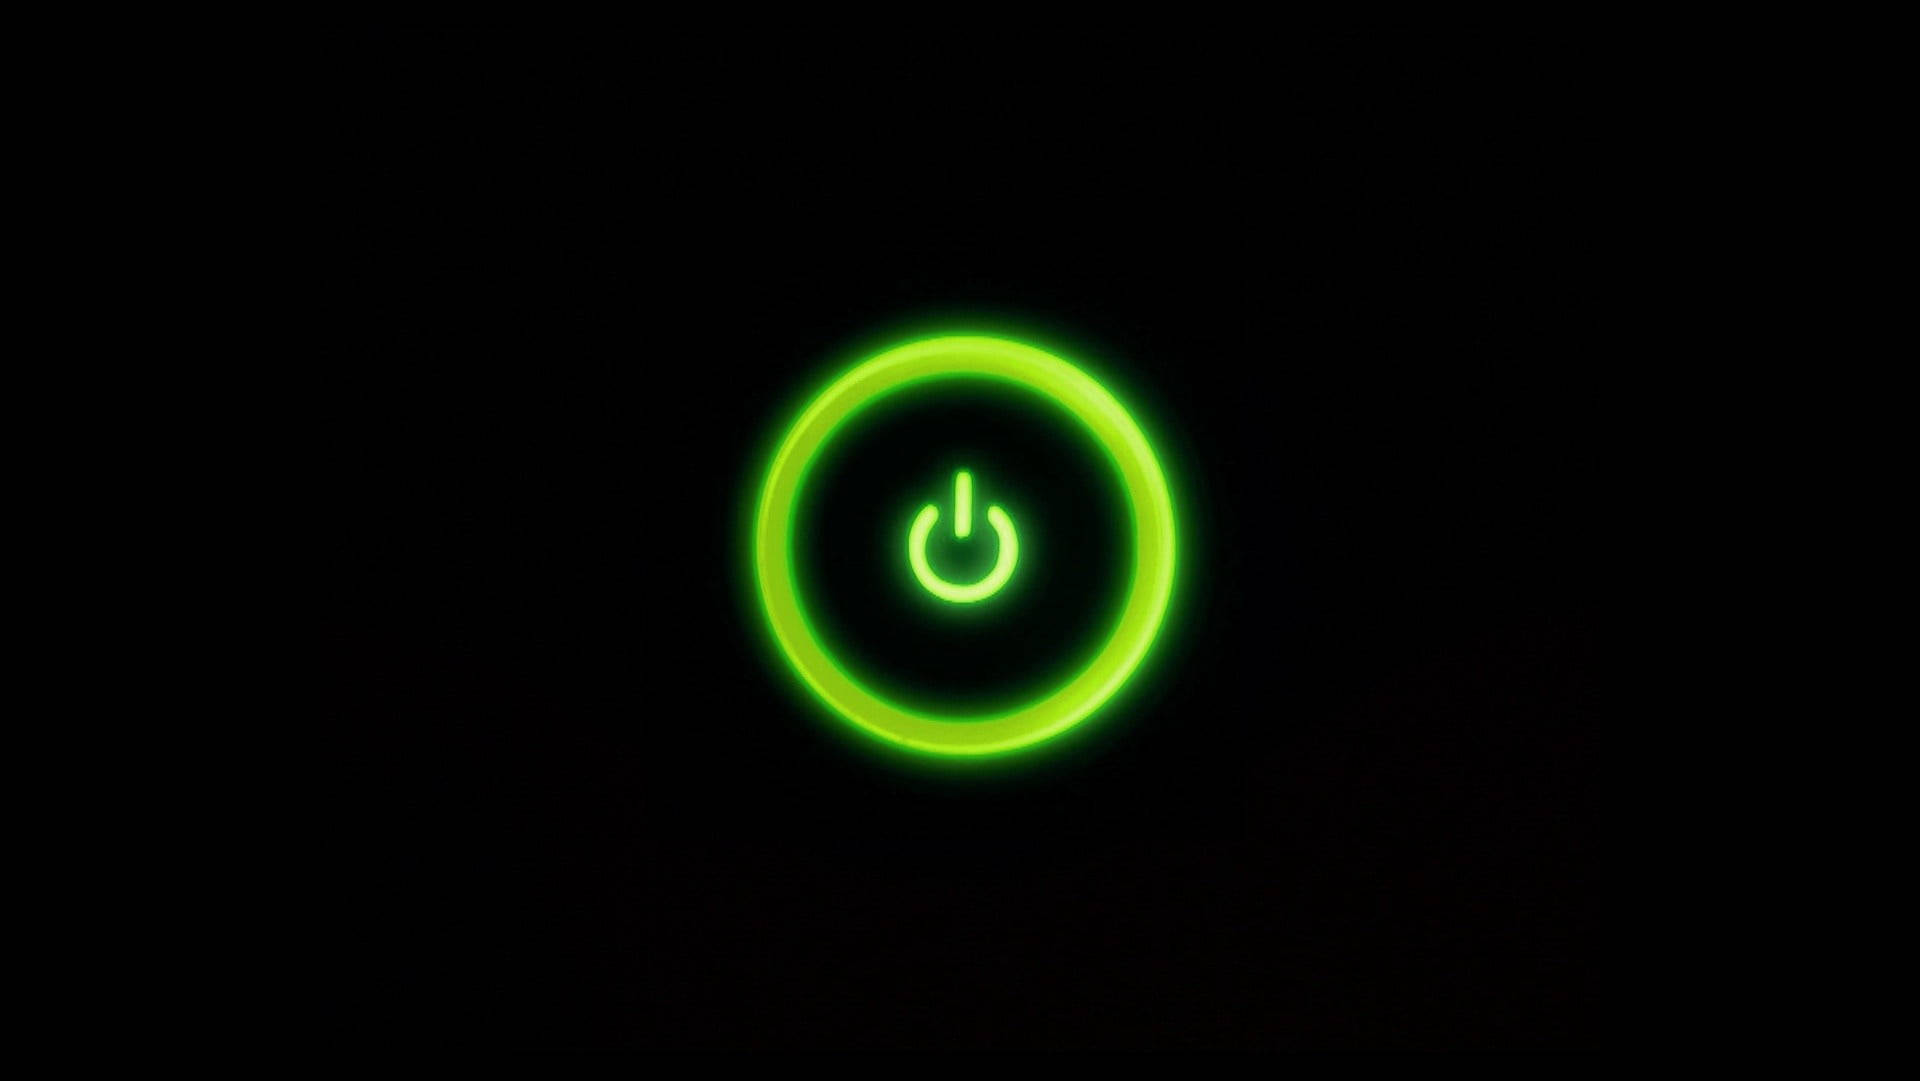 Neon Green Power Button Background